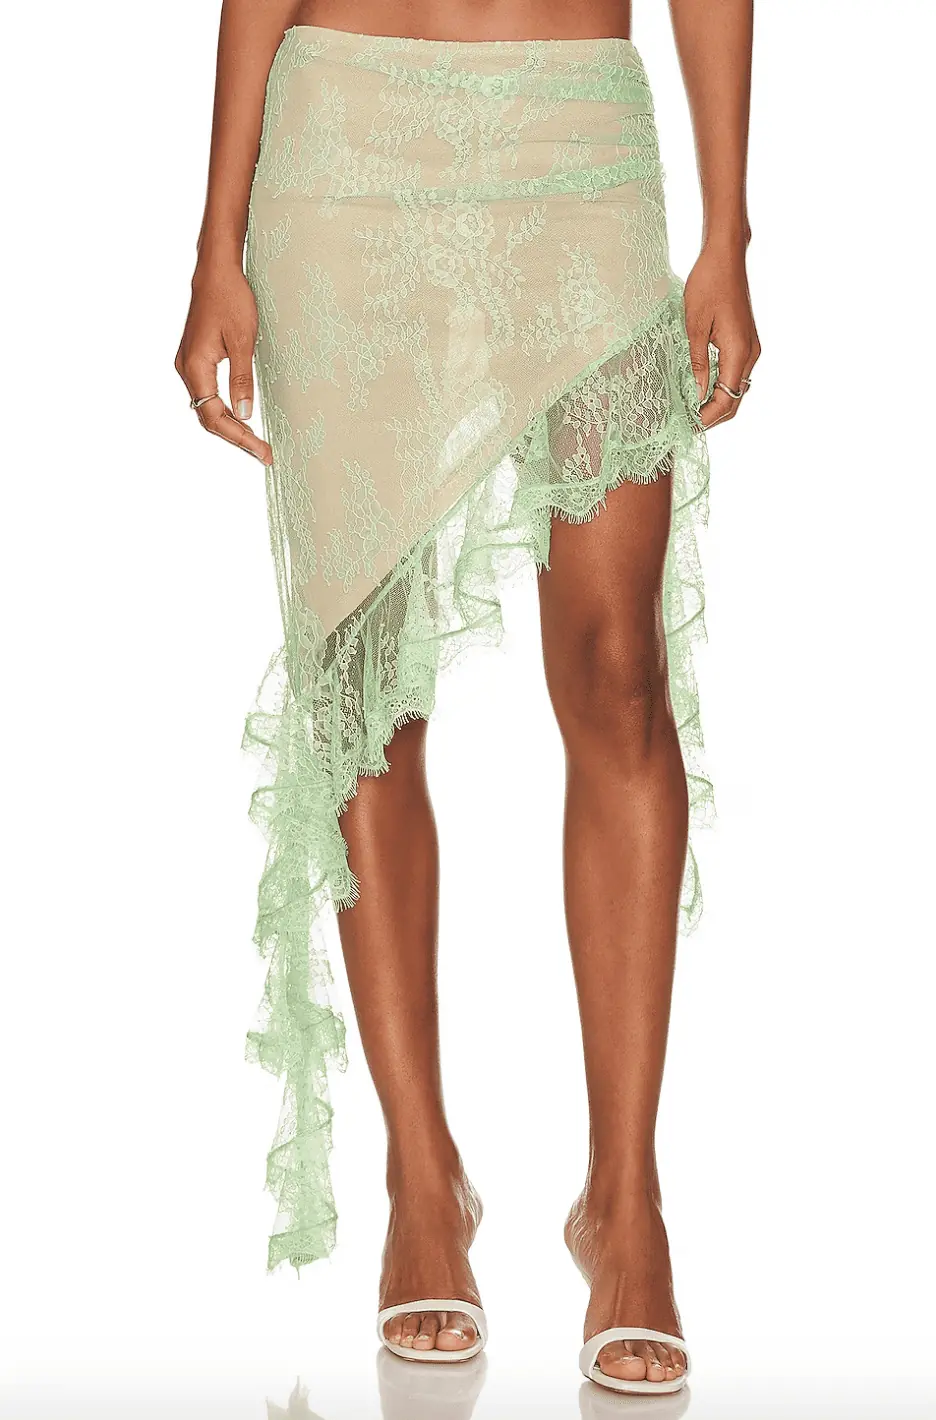 Amanda Batula's Green Lace Asymmetric Skirt